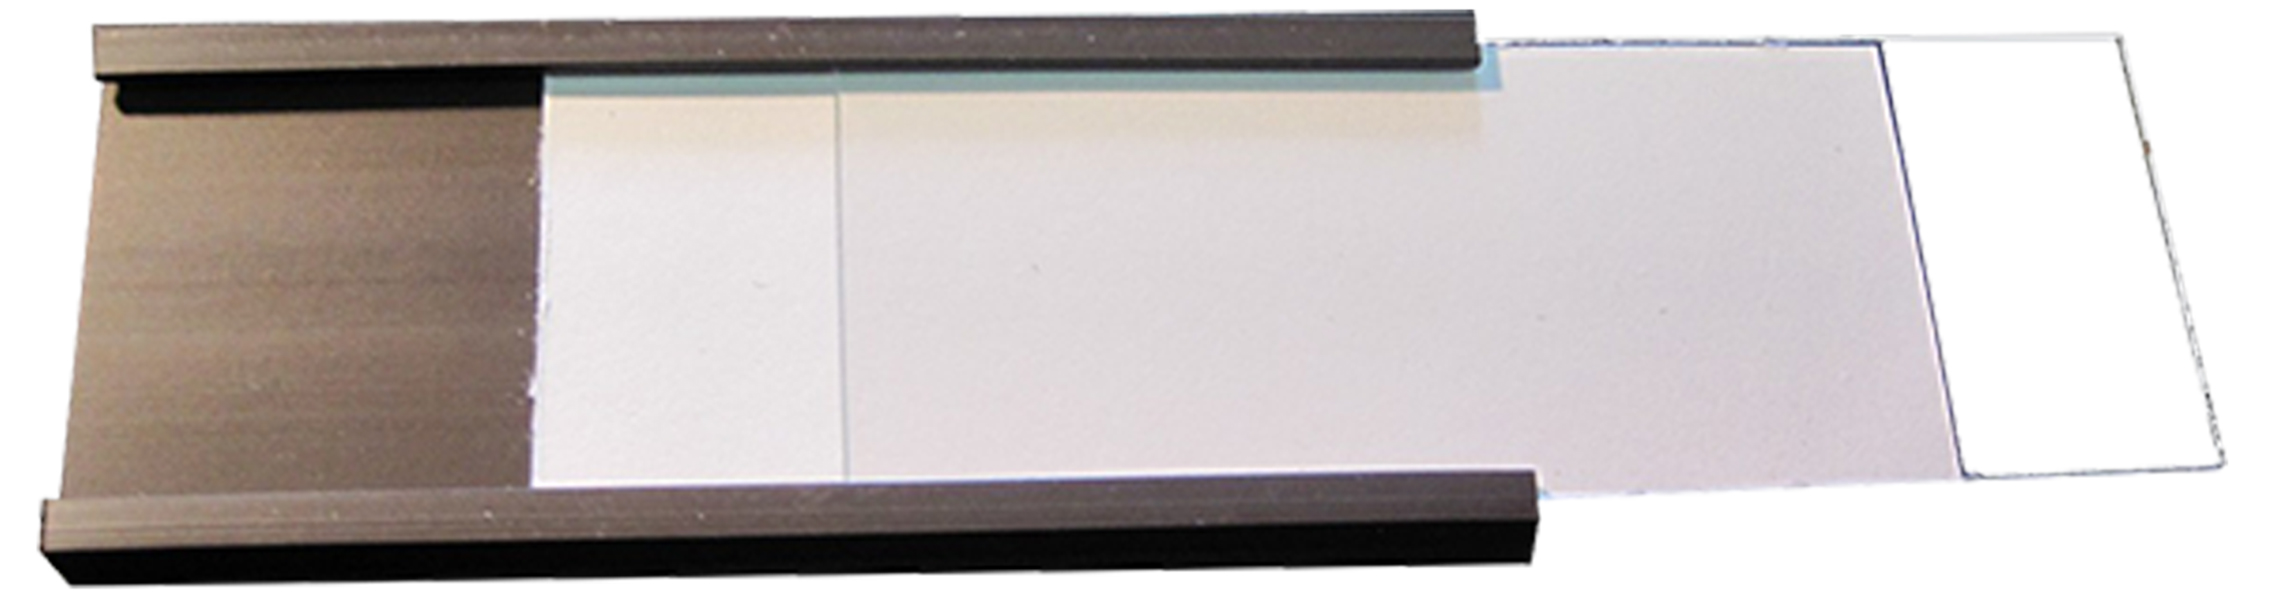 Portaetiquetas magnético con encarte de papel y lámina protectora, Etiquetas magneticas C-Profile, Perfiles C / Etiquetas magnéticas, Etiquetas y perfiles C magnéticos